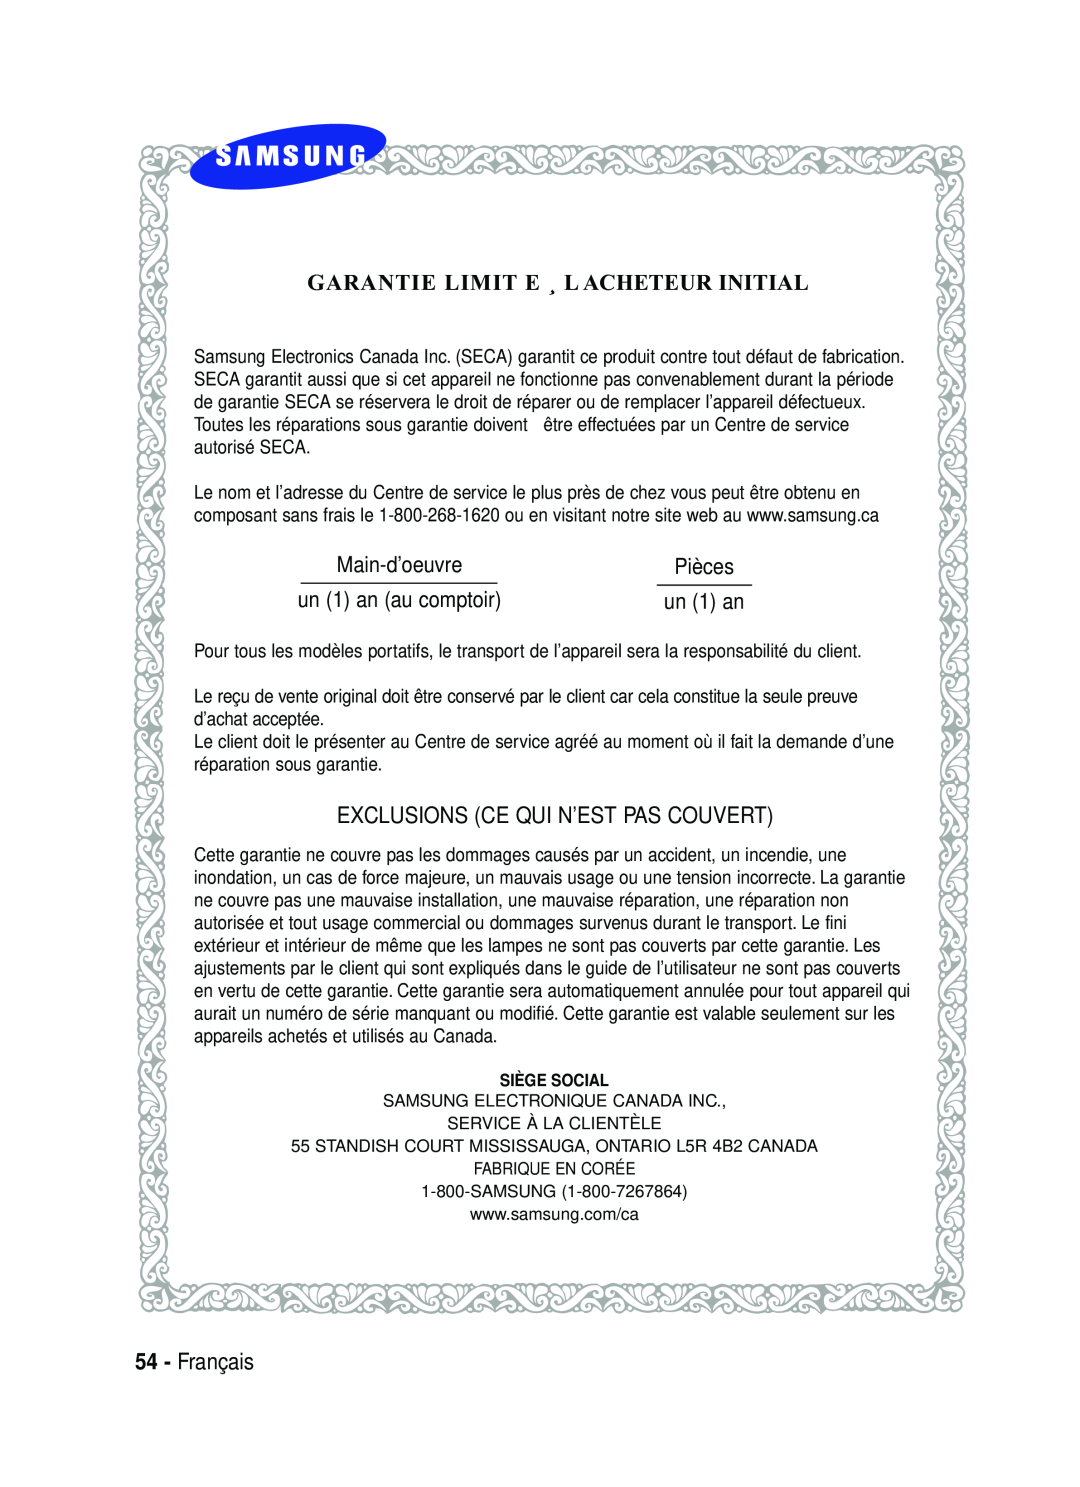 Samsung AK68-01357B manual Garantie Limit E ¸ L Acheteur Initial, Exclusions Ce Qui N’Est Pas Couvert, Français, Pièces 